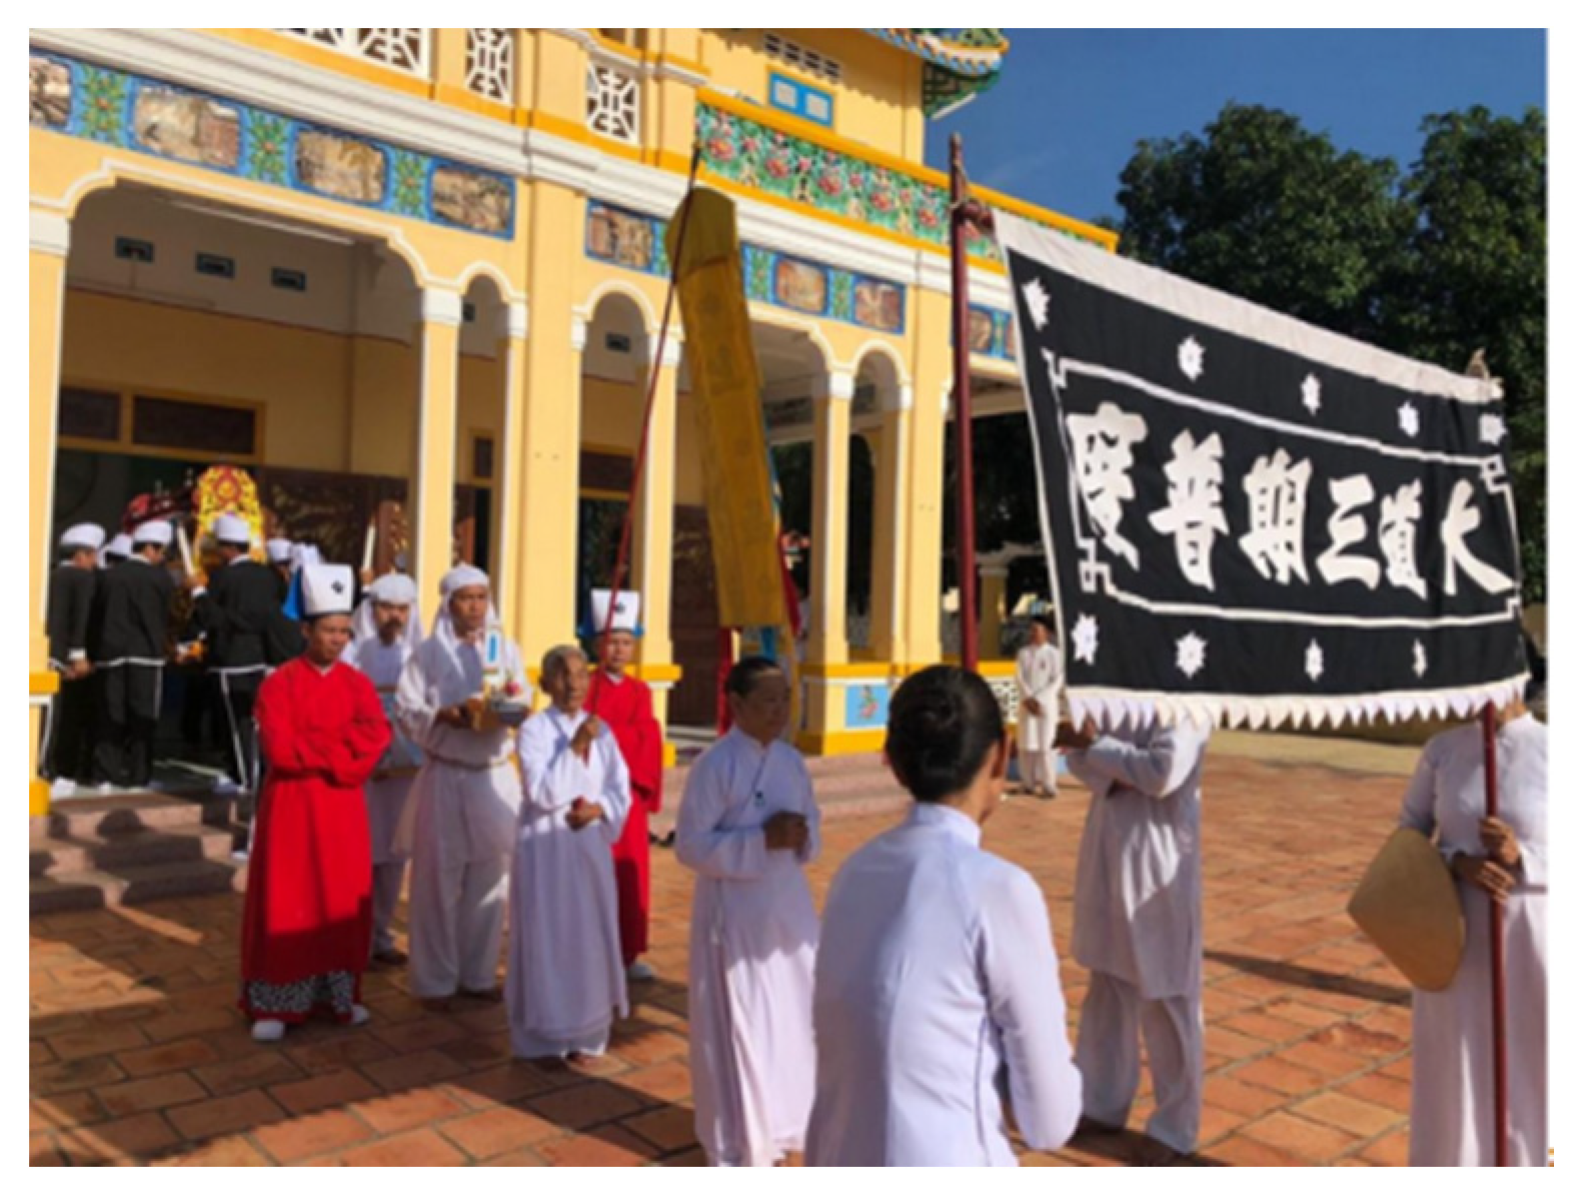 Cao Đài: Xem hình ảnh về đền thờ Cao Đài - một trong những tôn giáo lớn nhất tại Việt Nam với lịch sử hơn 100 năm - sẽ cho bạn thấy vẻ đẹp tôn giáo độc đáo của đất nước chúng ta.